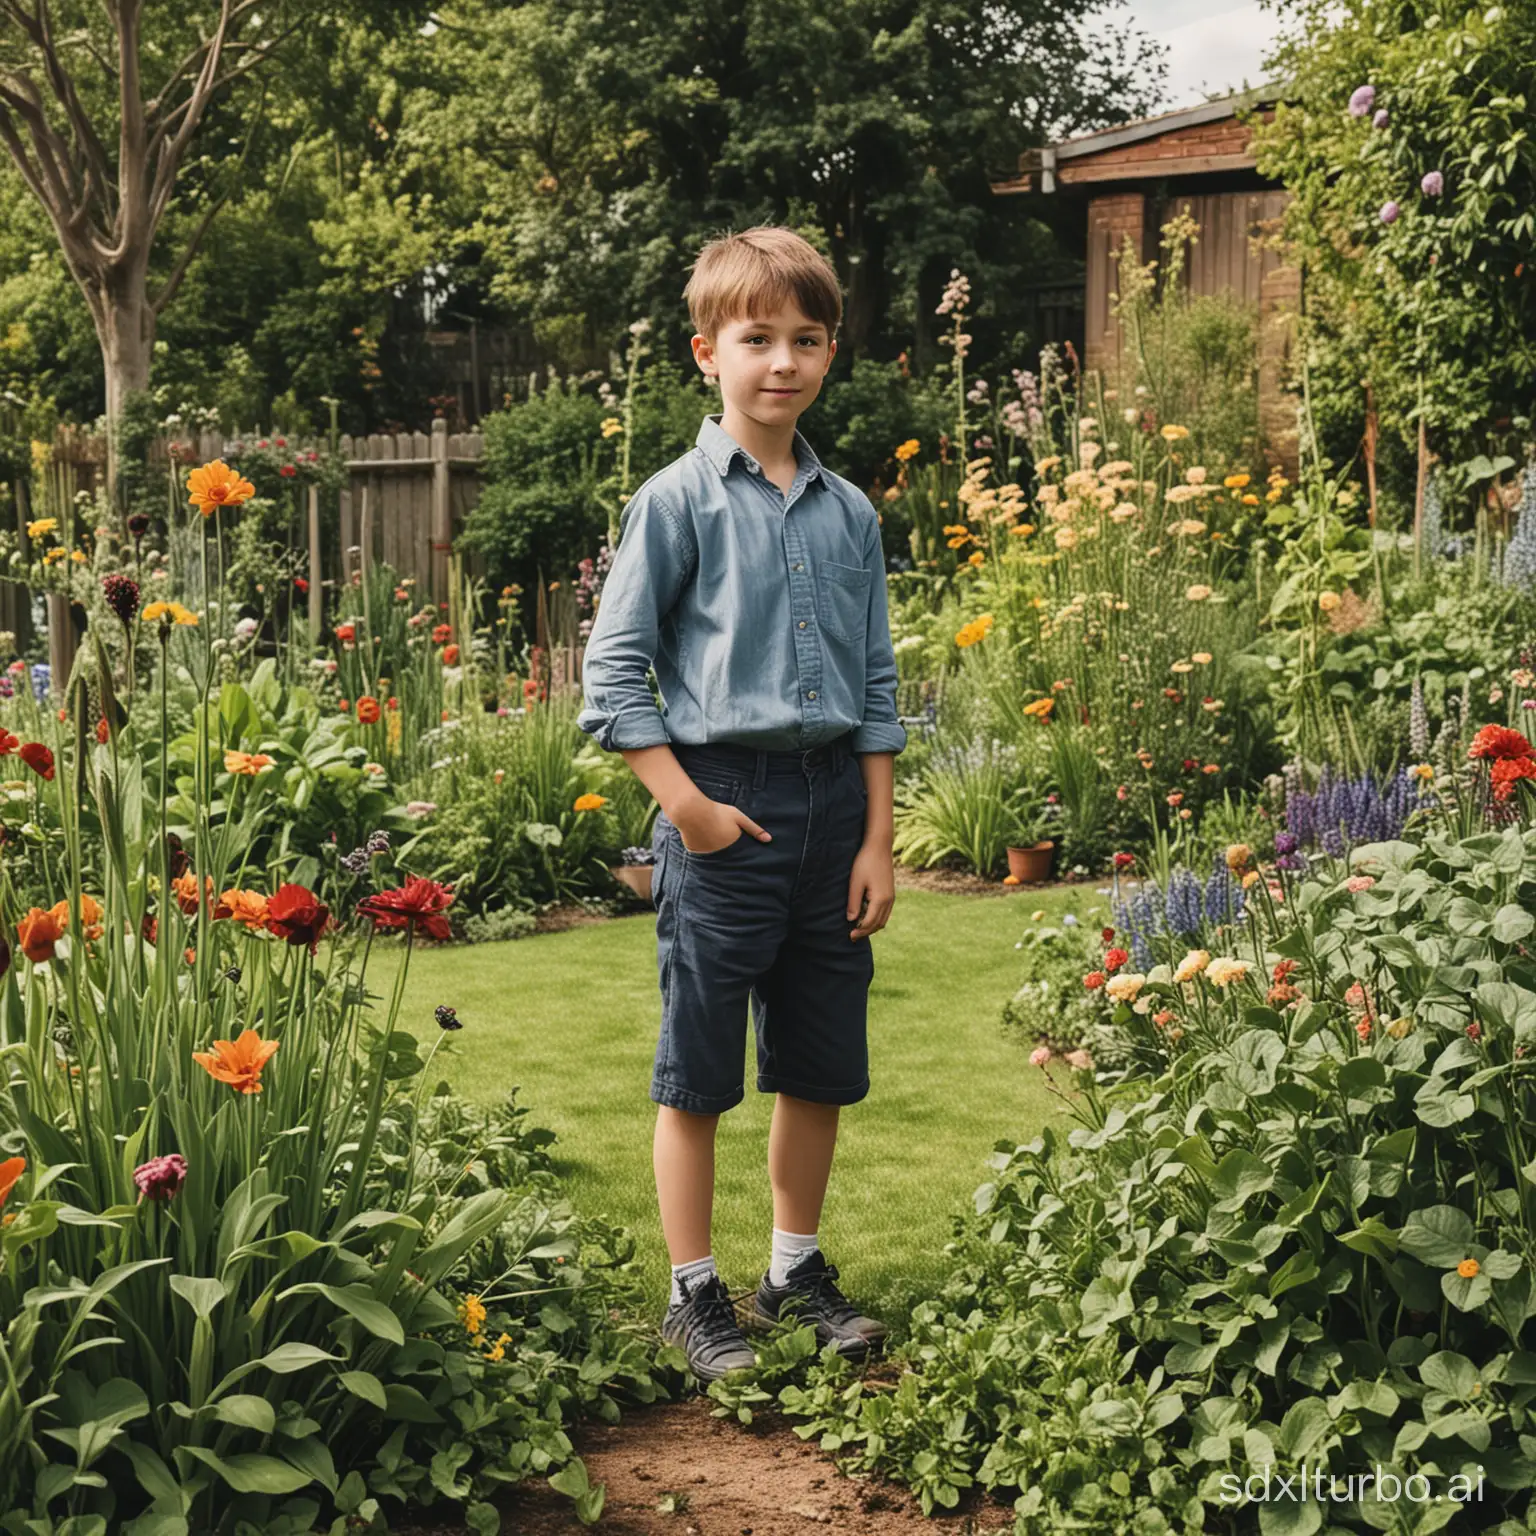 Young-Boy-Exploring-a-Vibrant-Garden-Scene